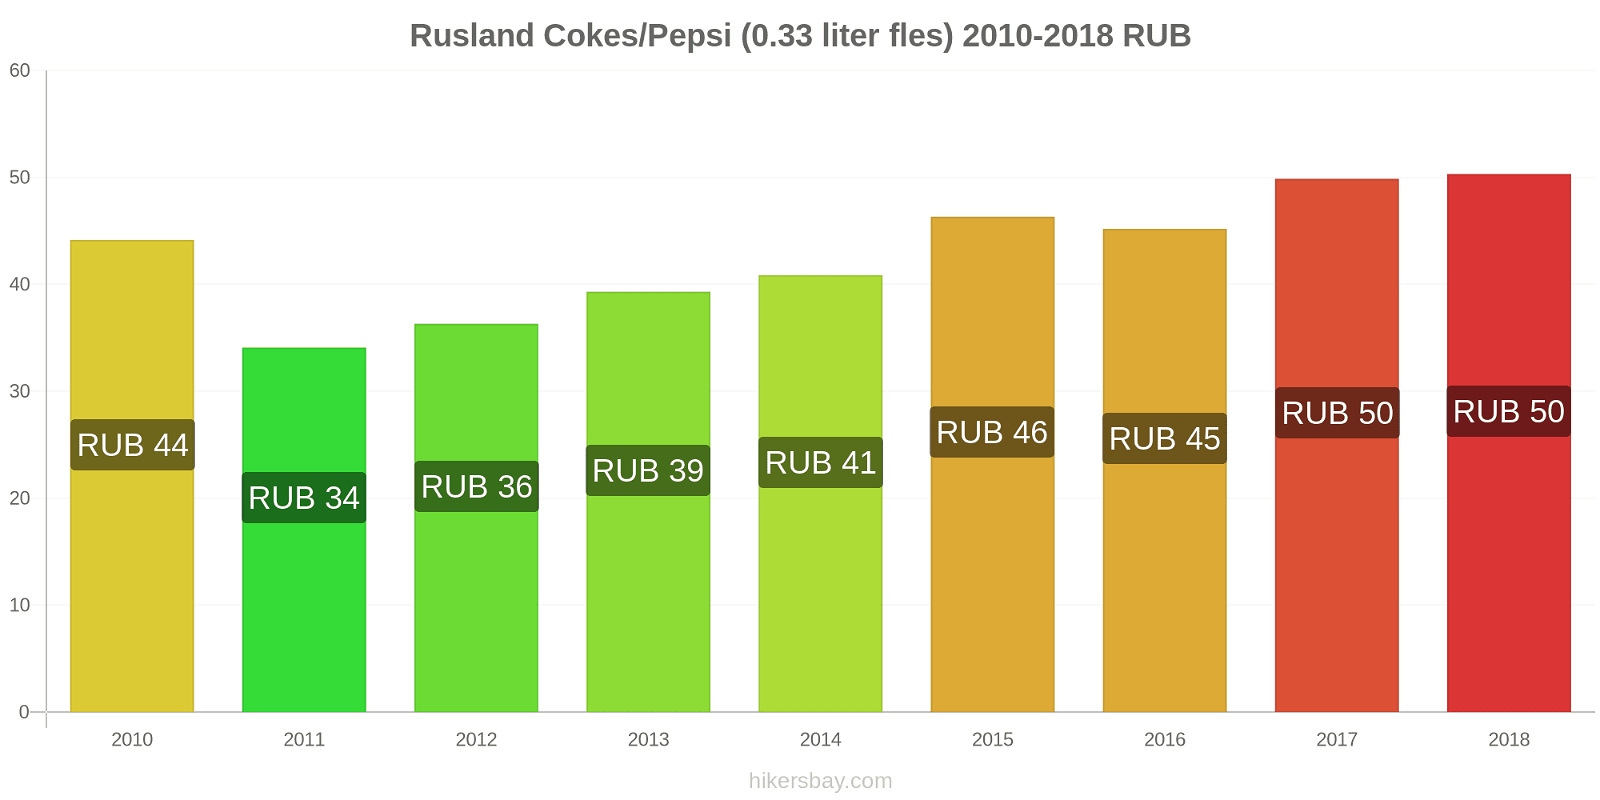 Rusland prijswijzigingen Coca-Cola/Pepsi (0.33 liter fles) hikersbay.com